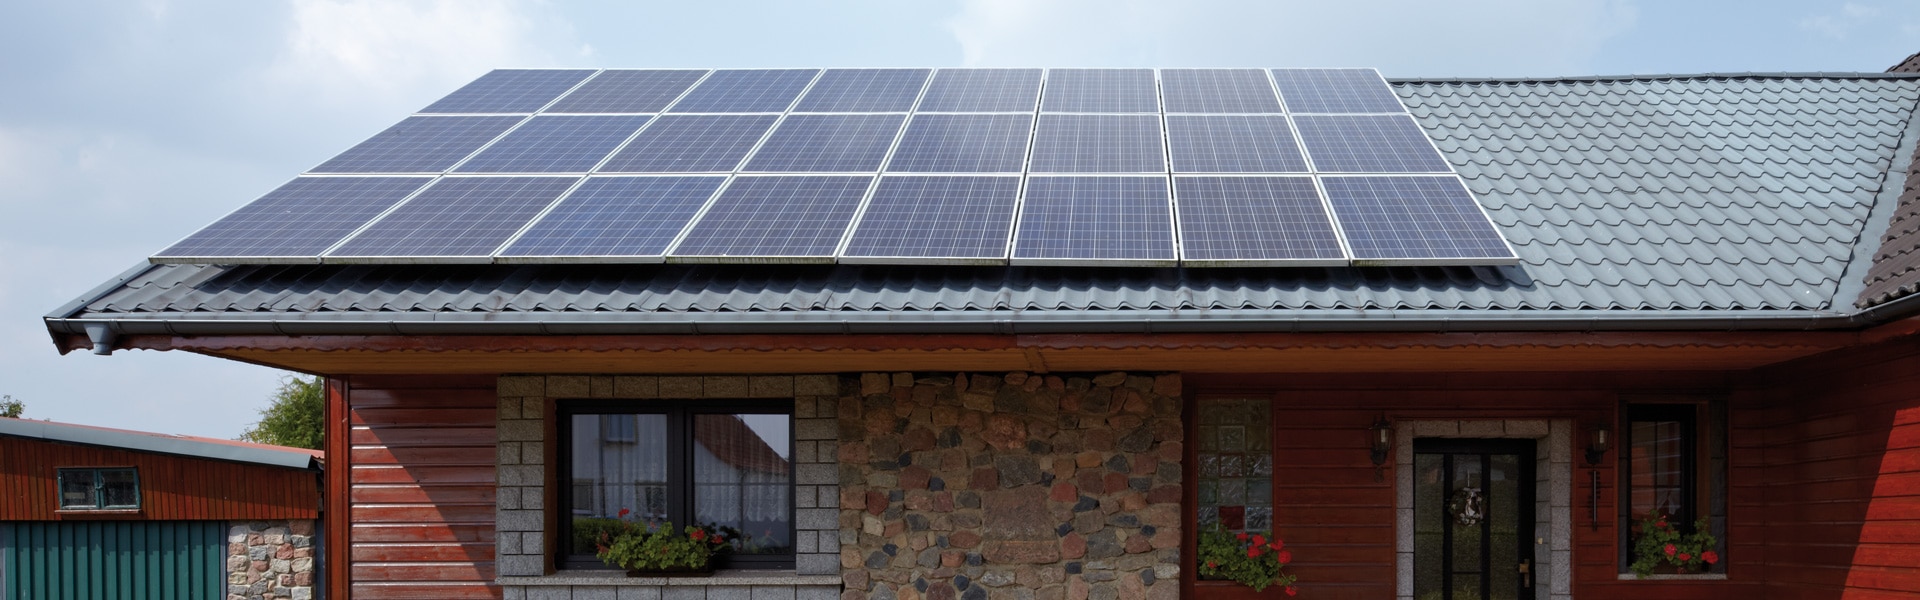 Mit einer Photovoltaik-Anlage auf dem Dach wird jeder Hausbesitzer zum Stromerzeuger.